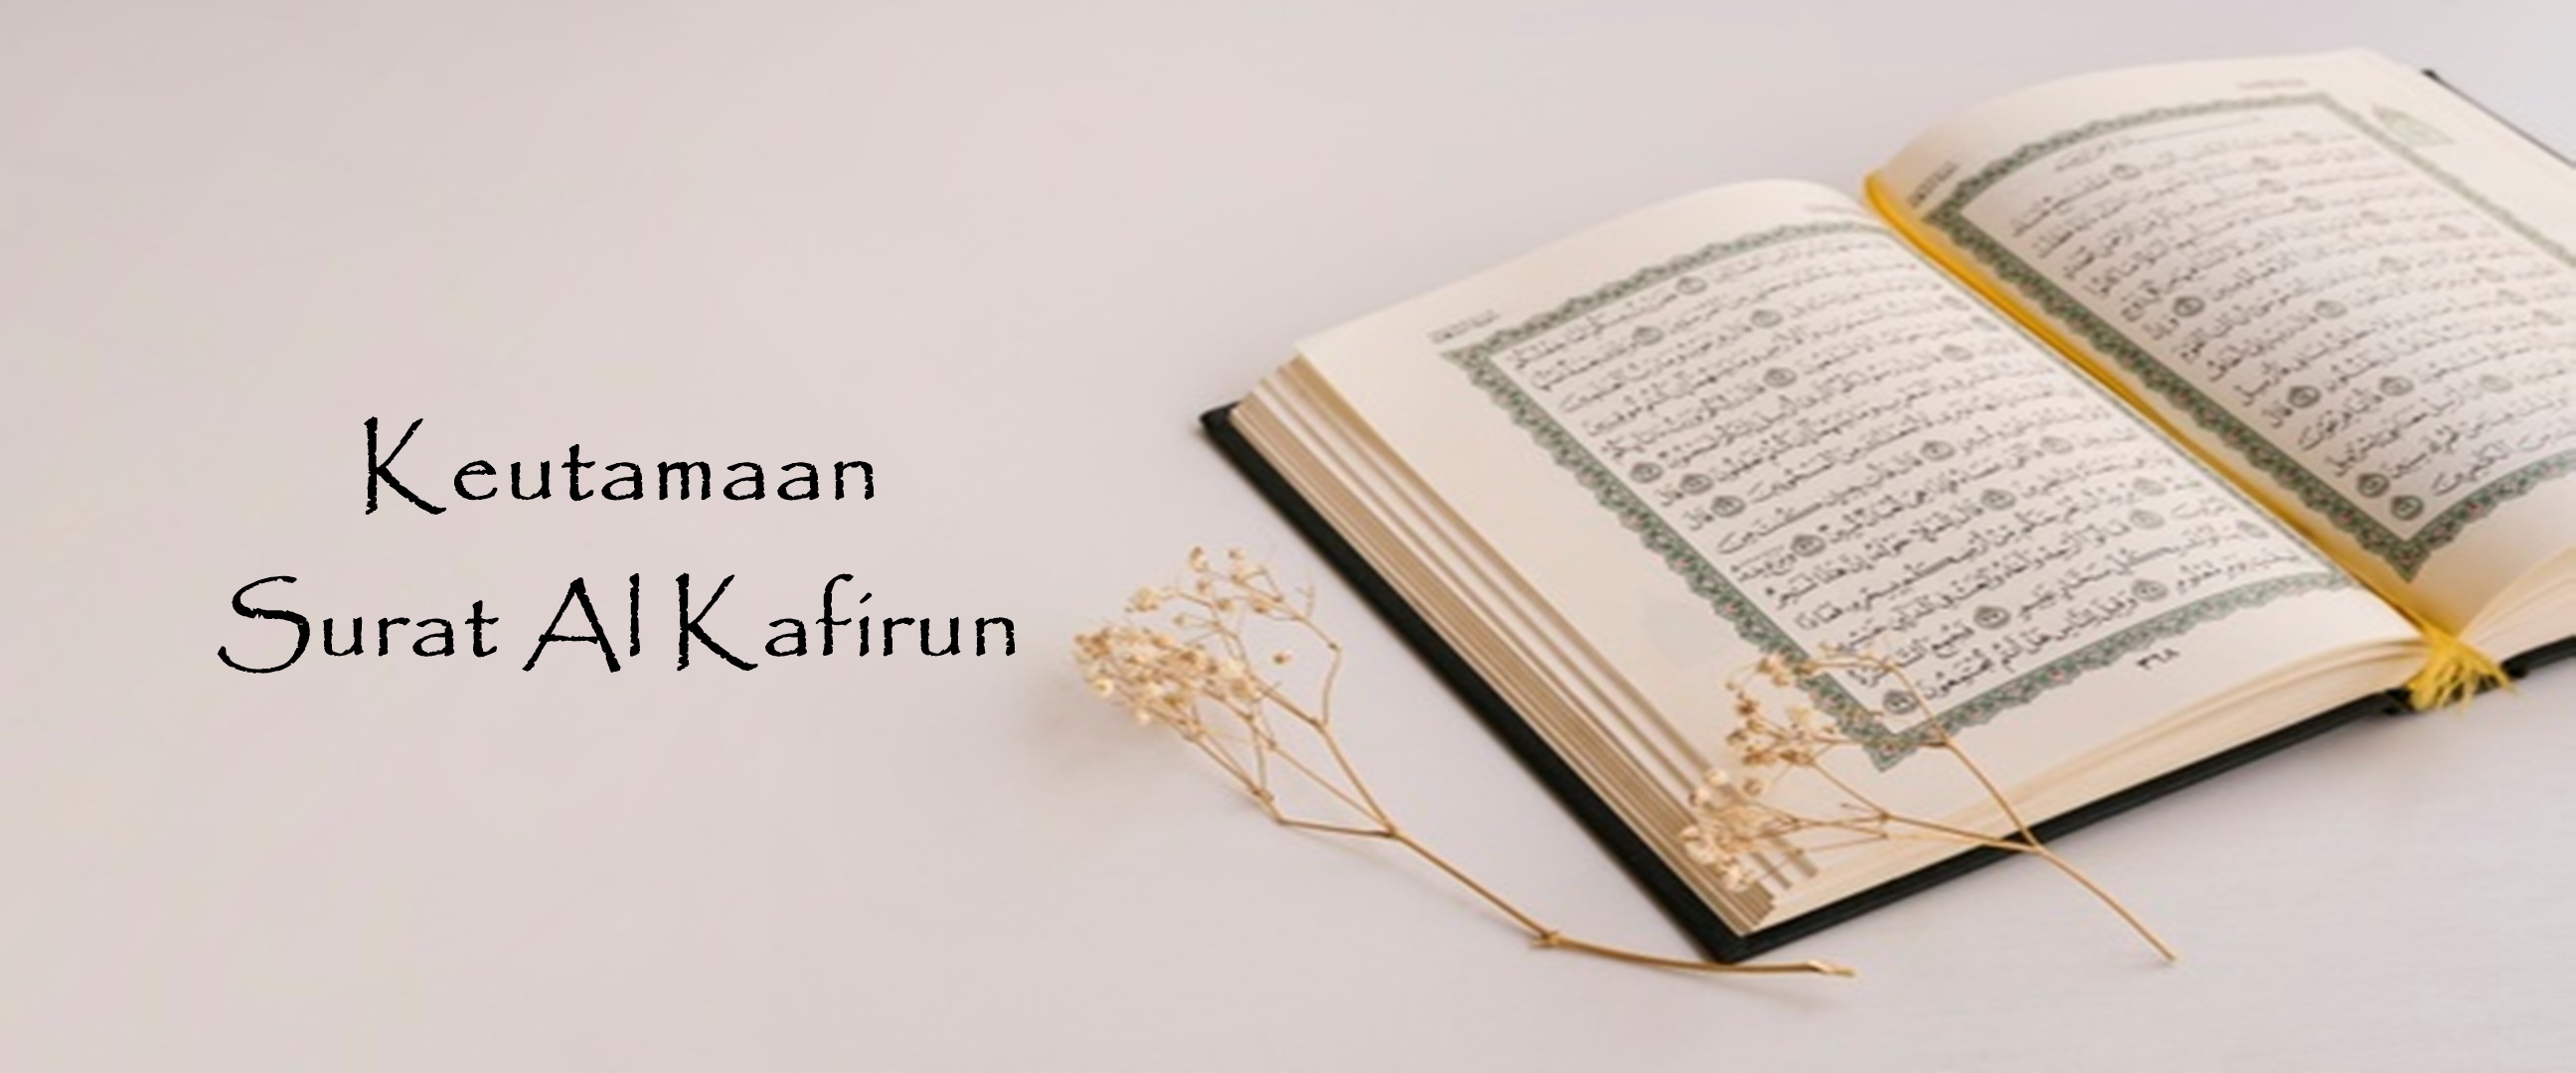 Keutamaan dan arti surat Al Kafirun dalam Alquran